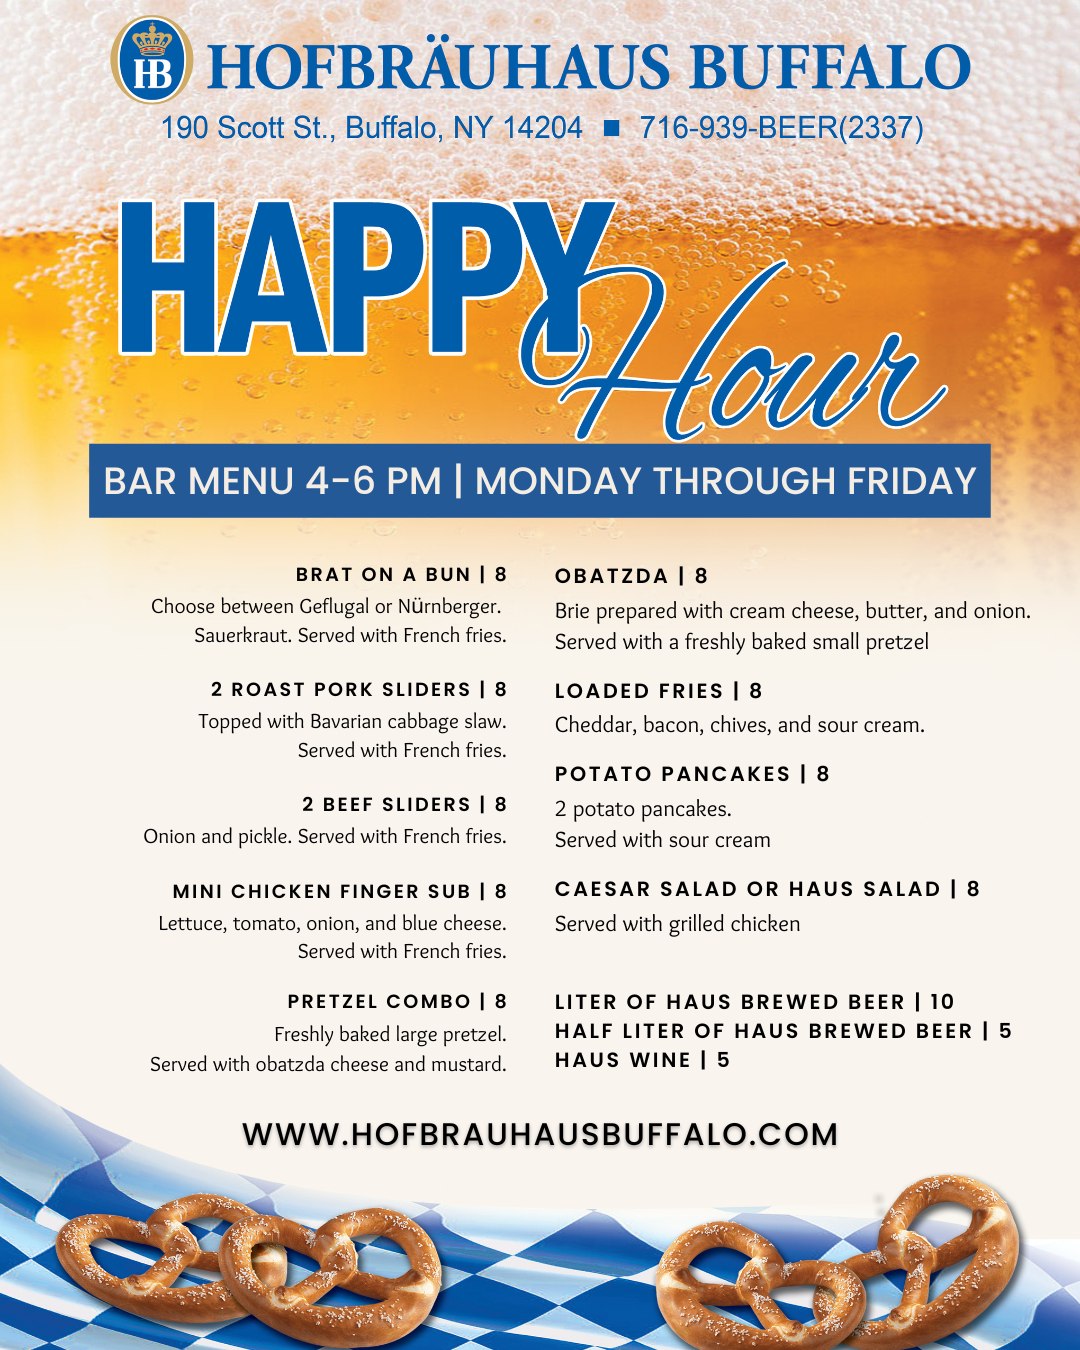 Happy Hour at Hofbrauhaus Buffalo